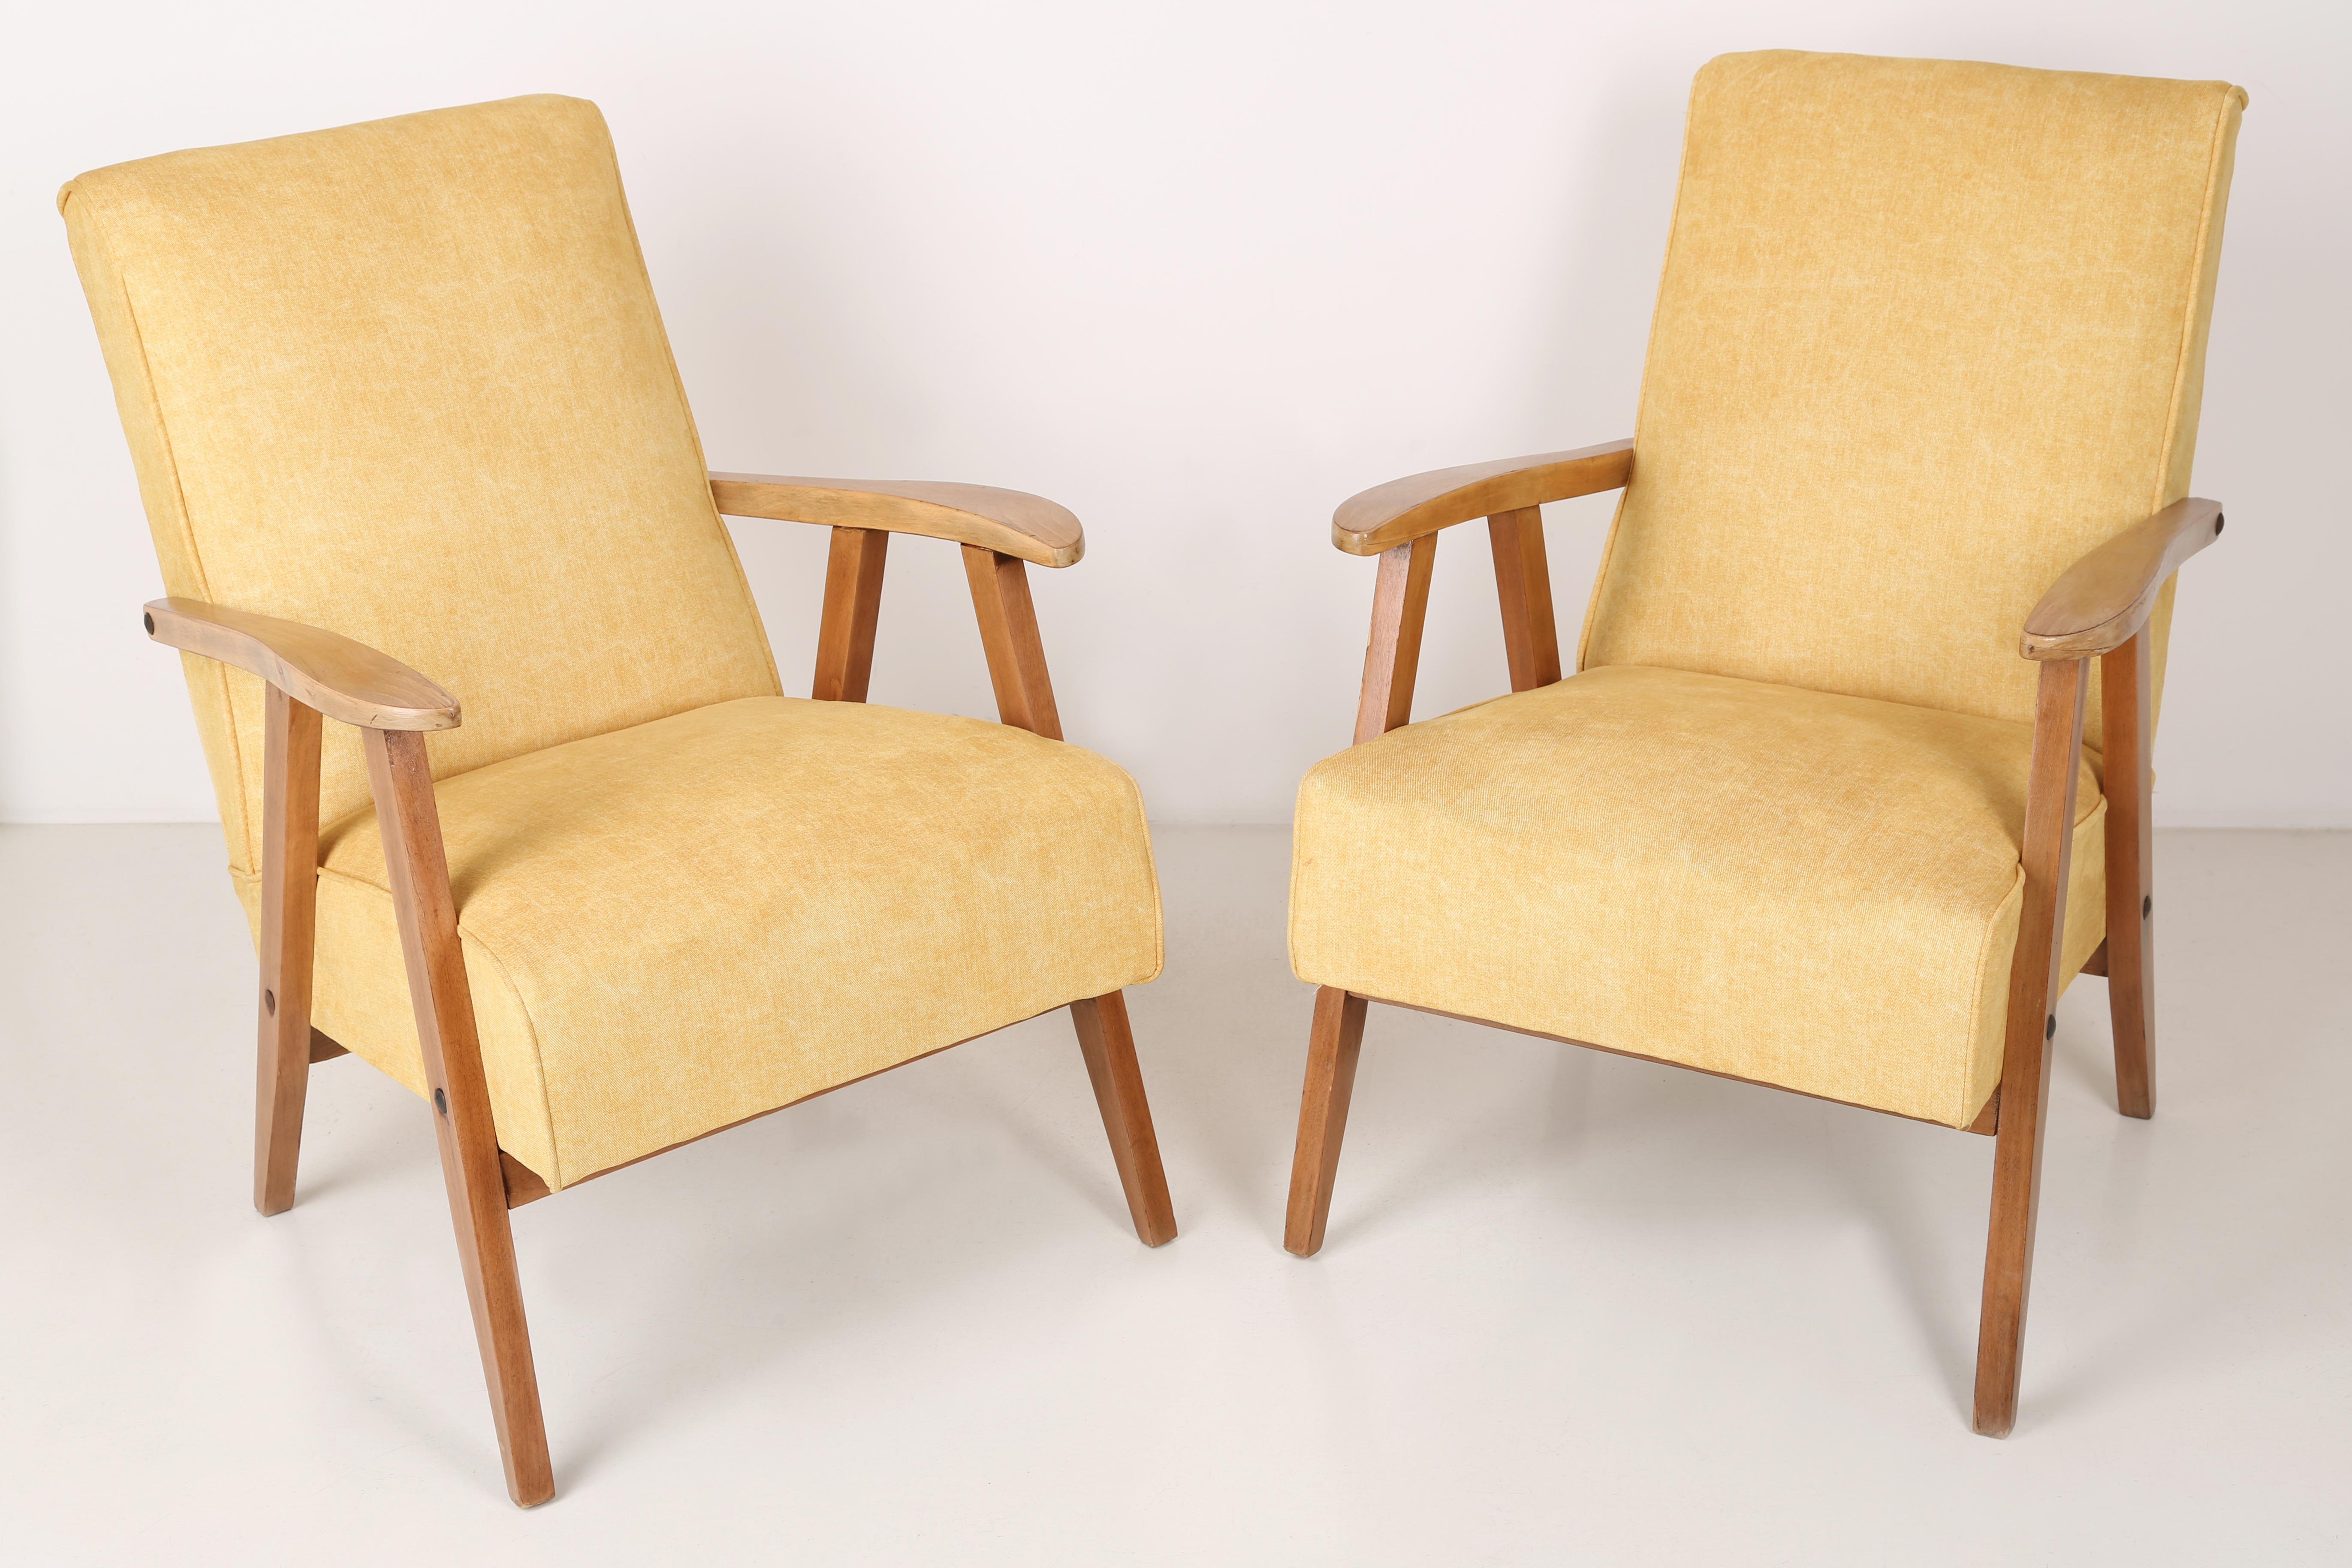 Ein schöner, bequemer Sessel vom Typ VAR, der in den 1960er Jahren in Polen hergestellt wurde. Ein sehr bequemer Federsitz. Der Sessel wurde einer vollständigen Renovierung in Bezug auf Tischlerarbeiten und Polsterung unterzogen. Wir können dieses